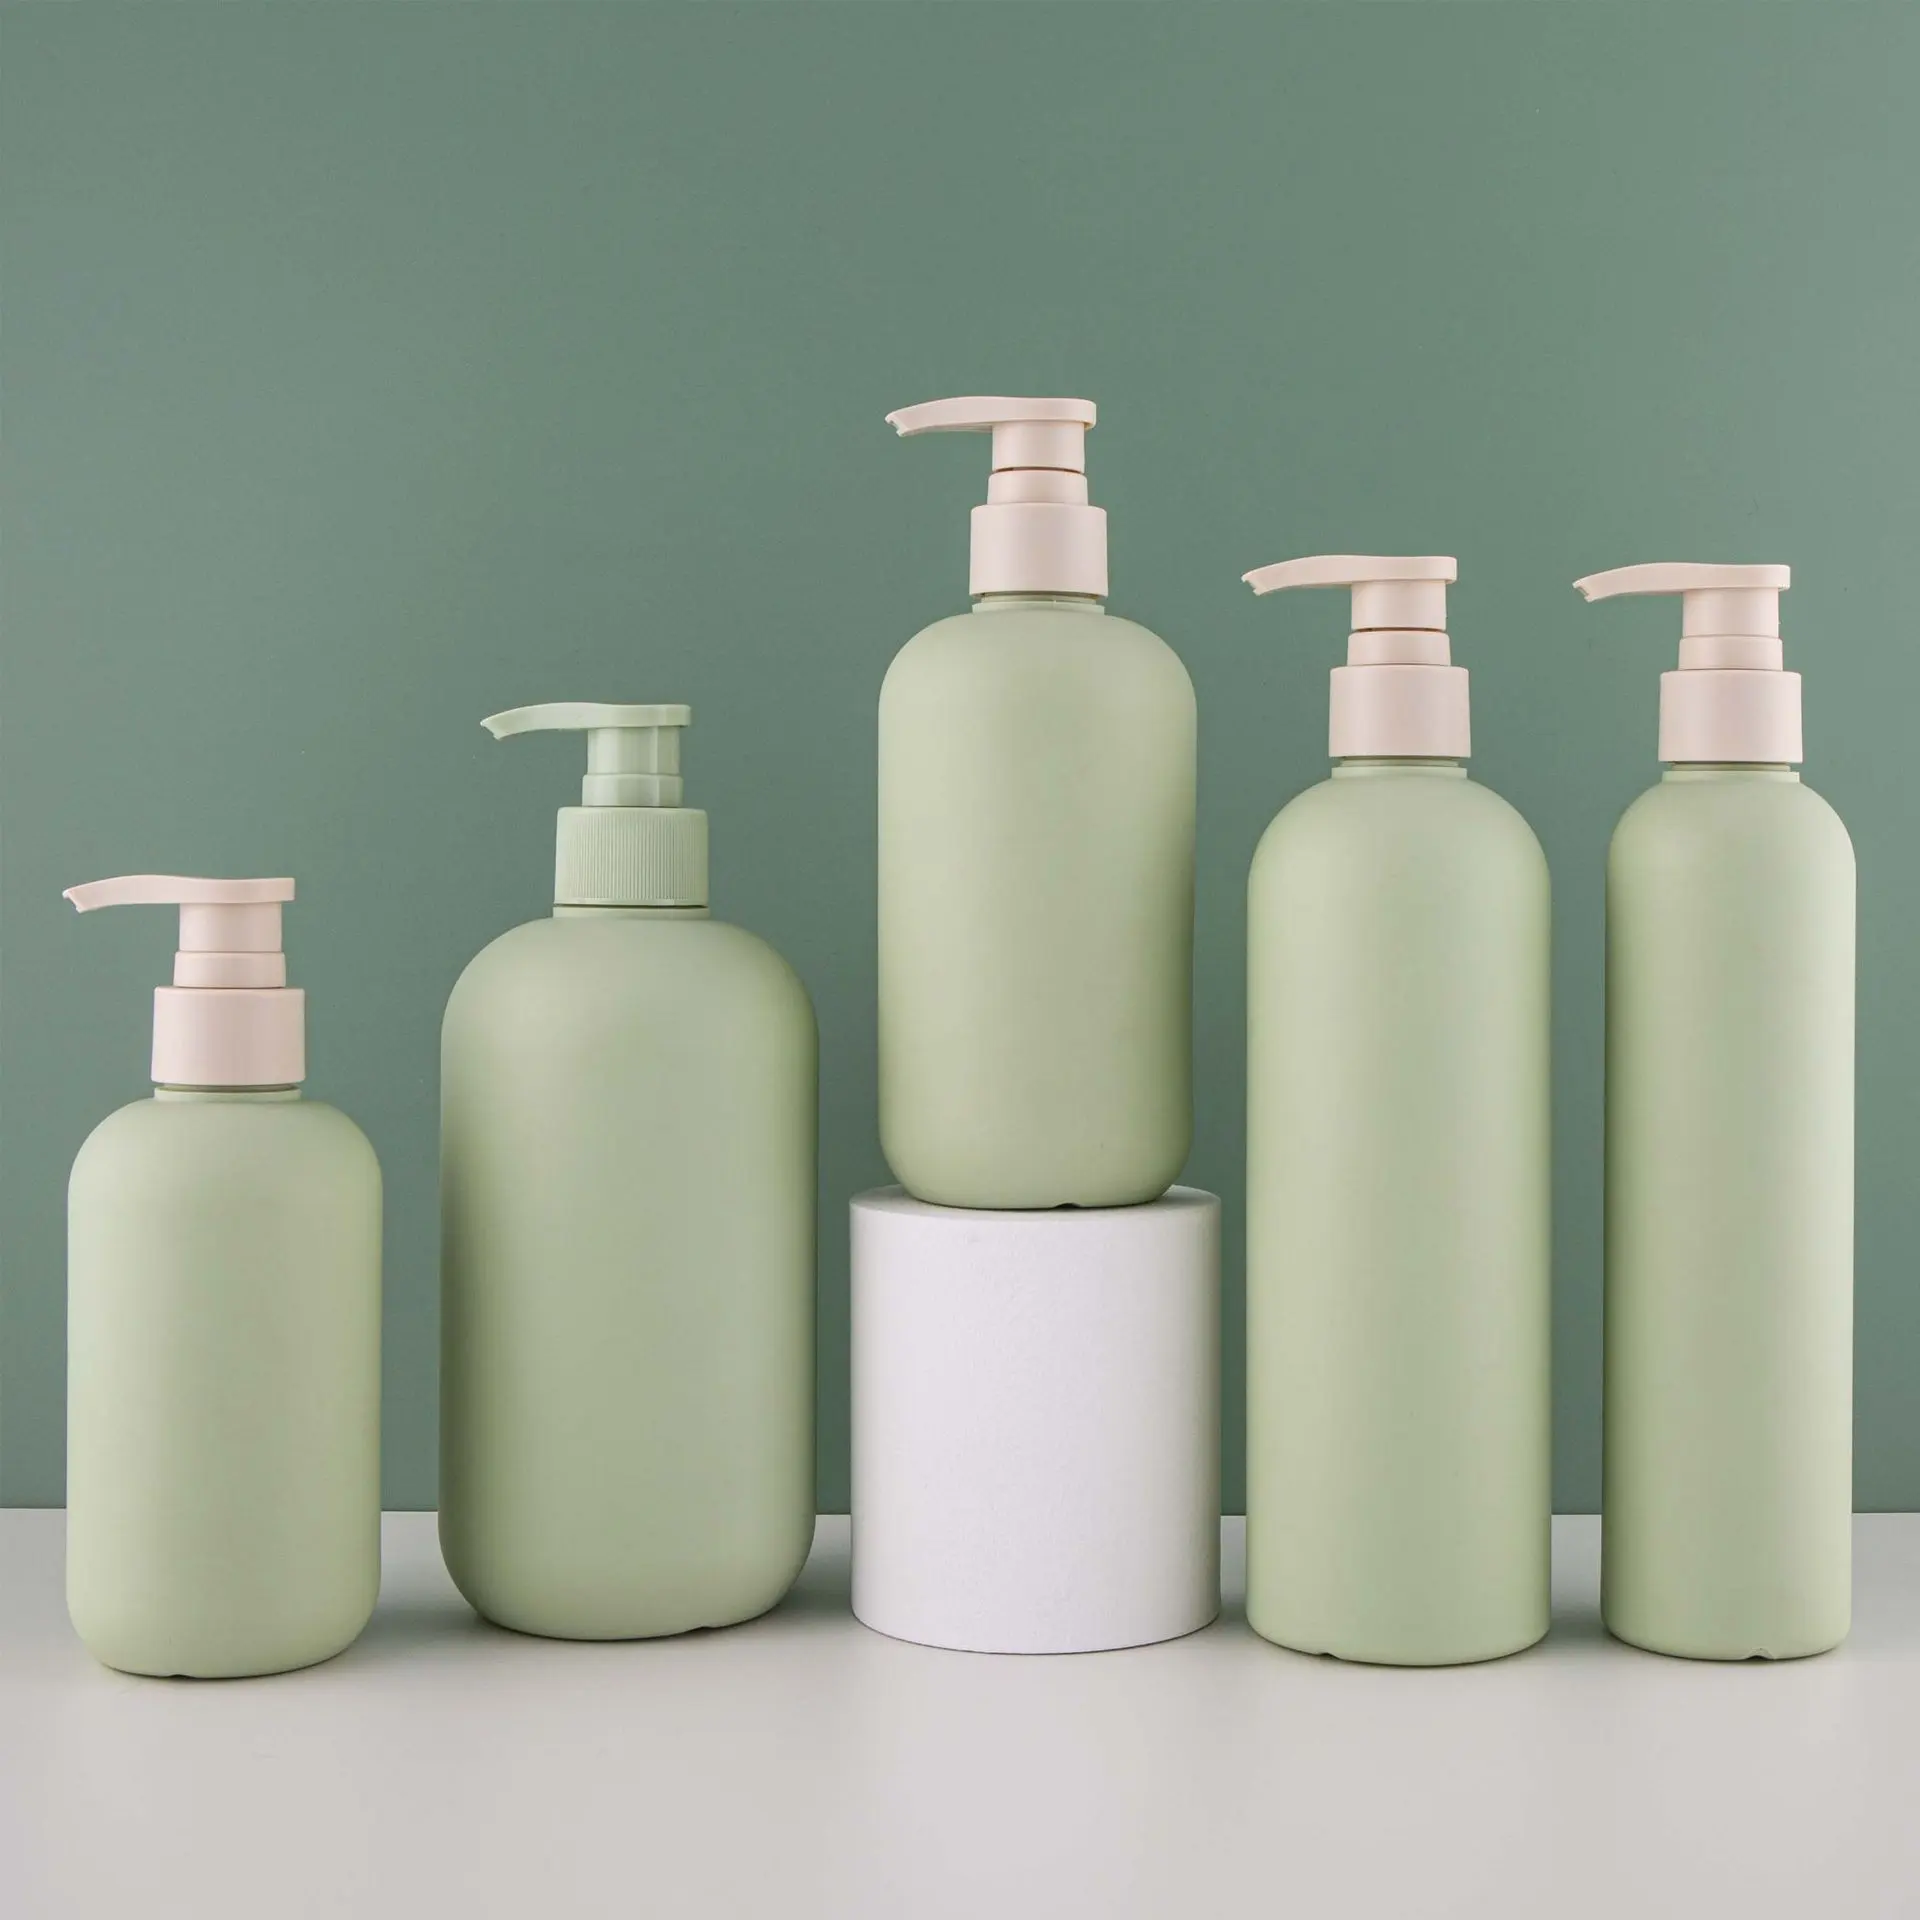 Behälter für Kosmetik Schönheits-Makeup-Creme Körperwäsche PP-PET-Kunststoff-Pumpe Spray Shampooflasche Spenderverpackung 17 Unzen bunt